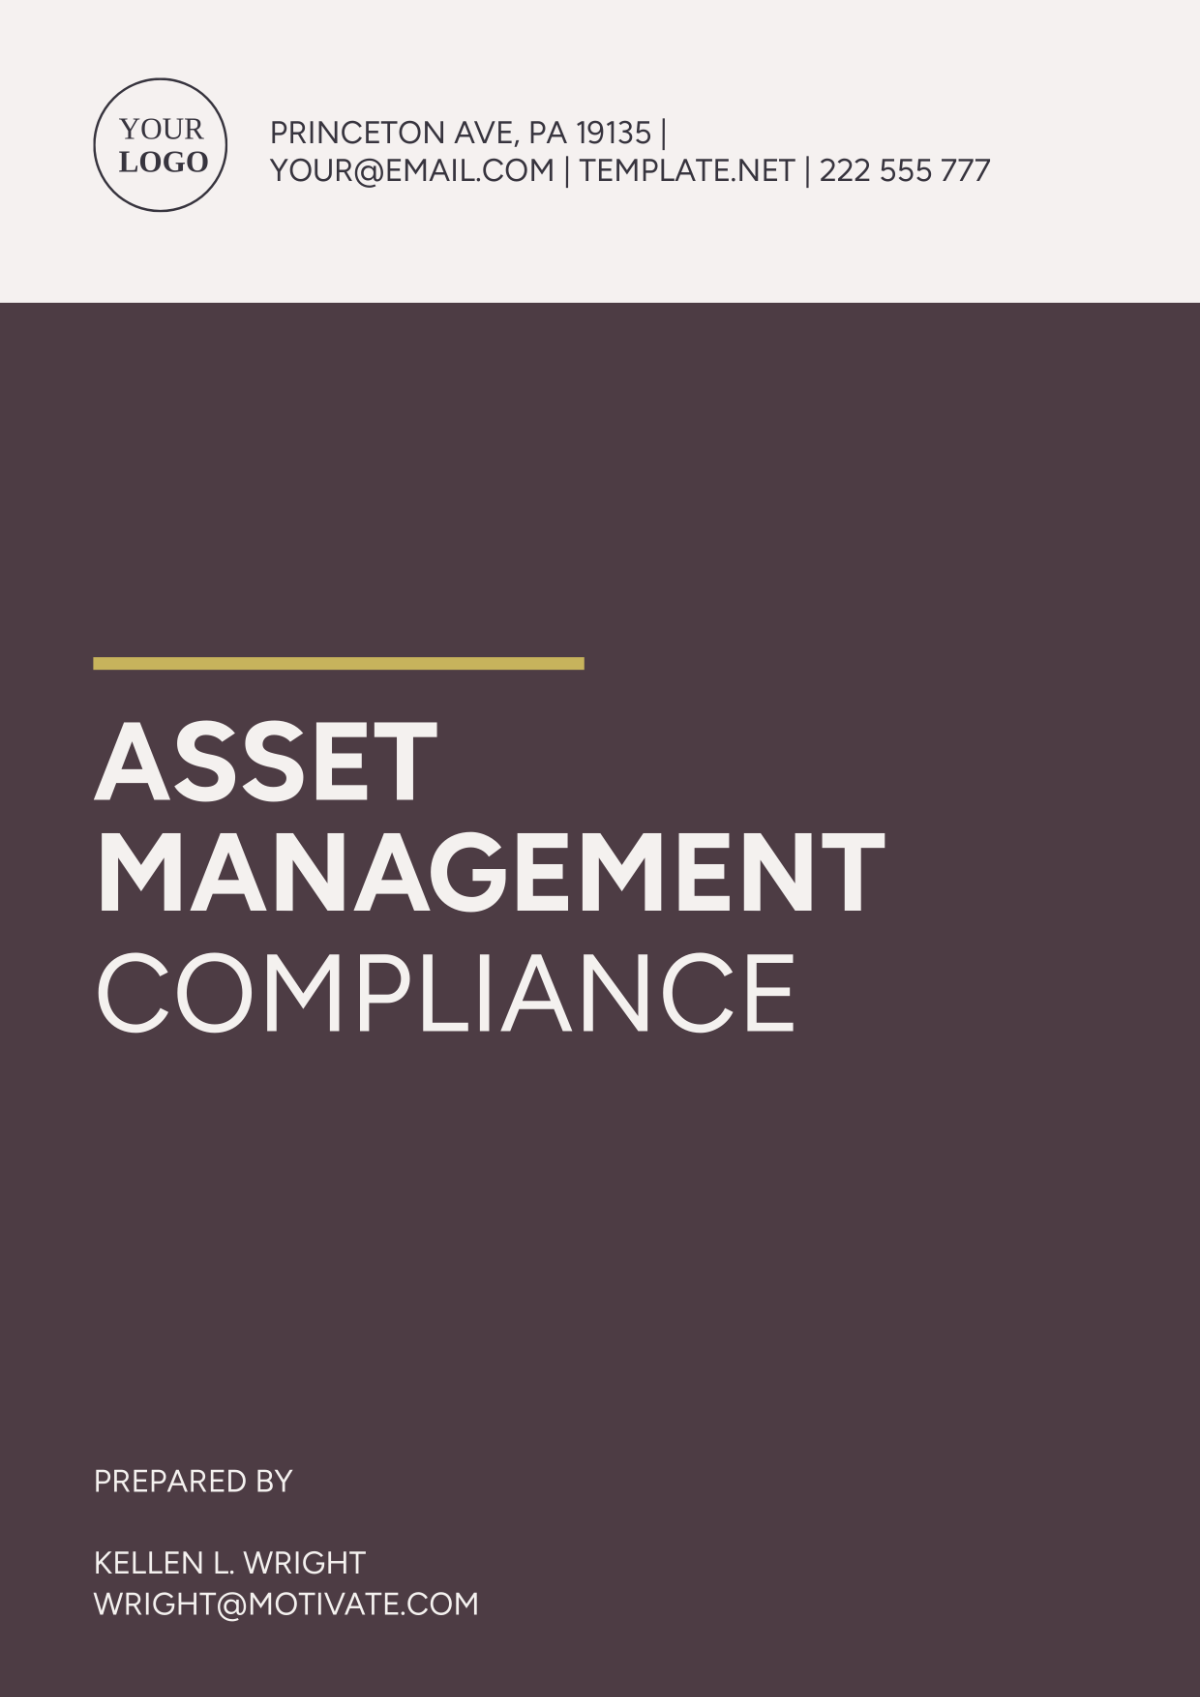 Asset Management Compliance Template